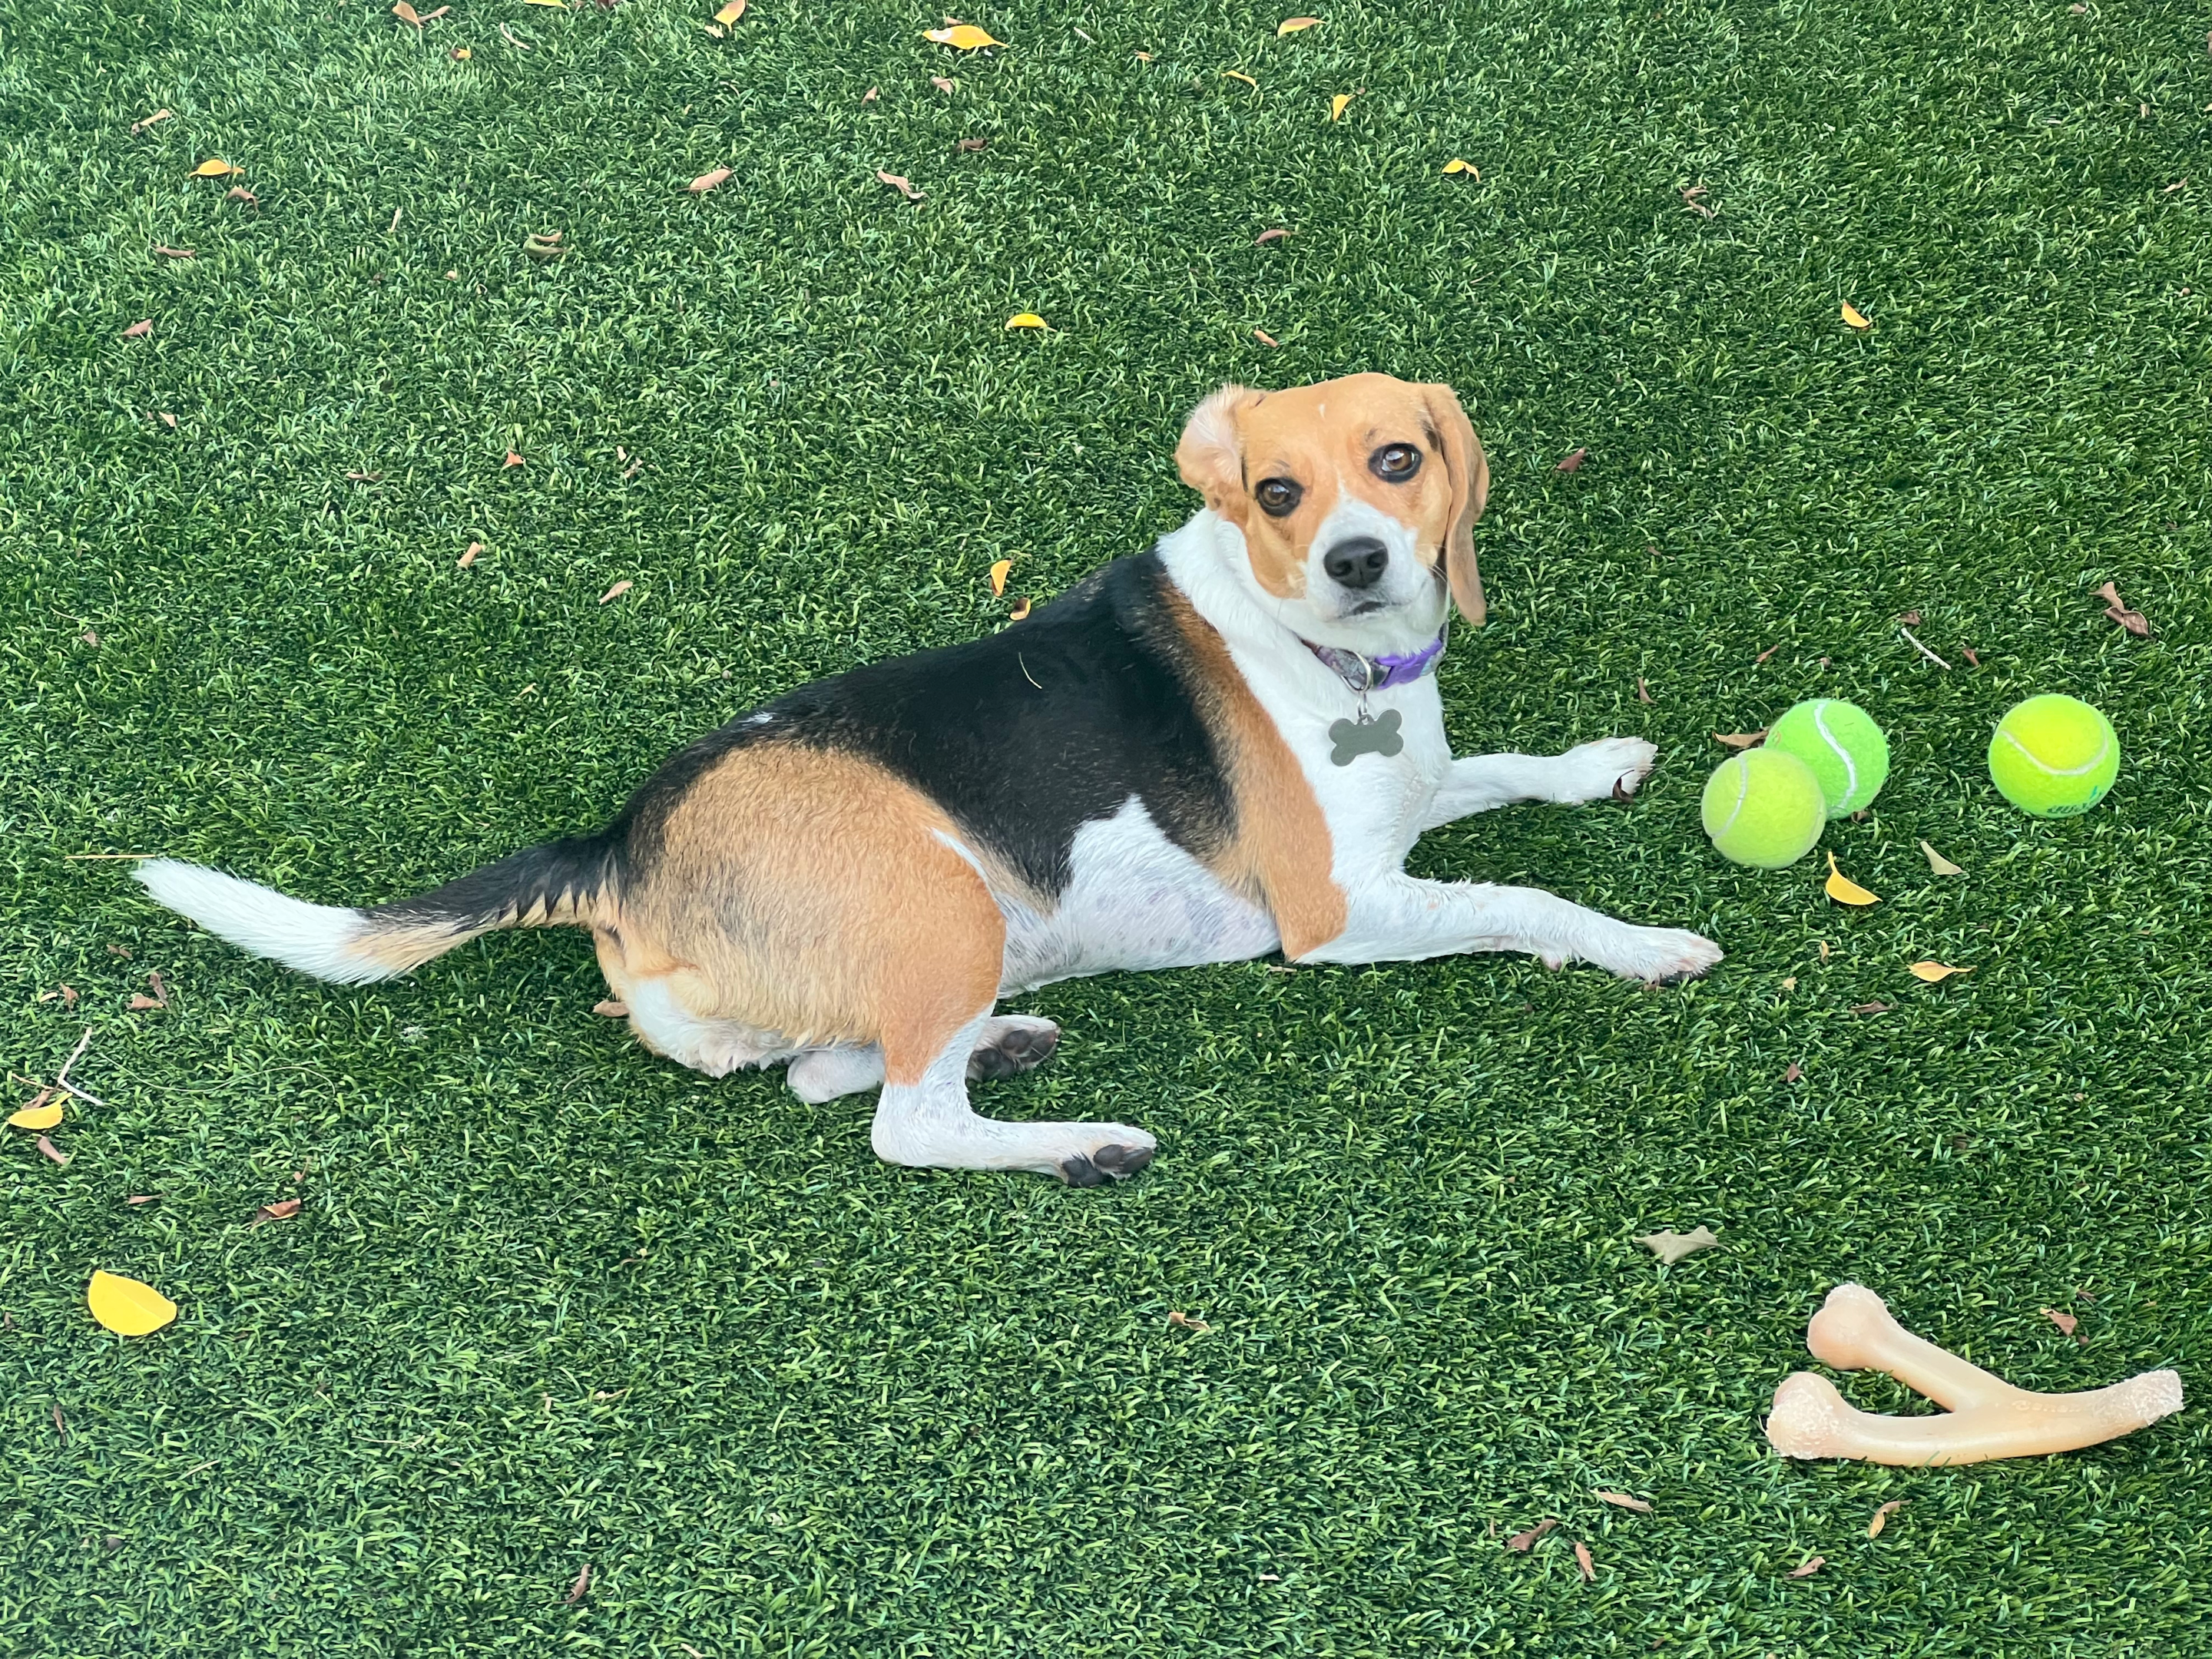 A beagle enjoying physical exercise